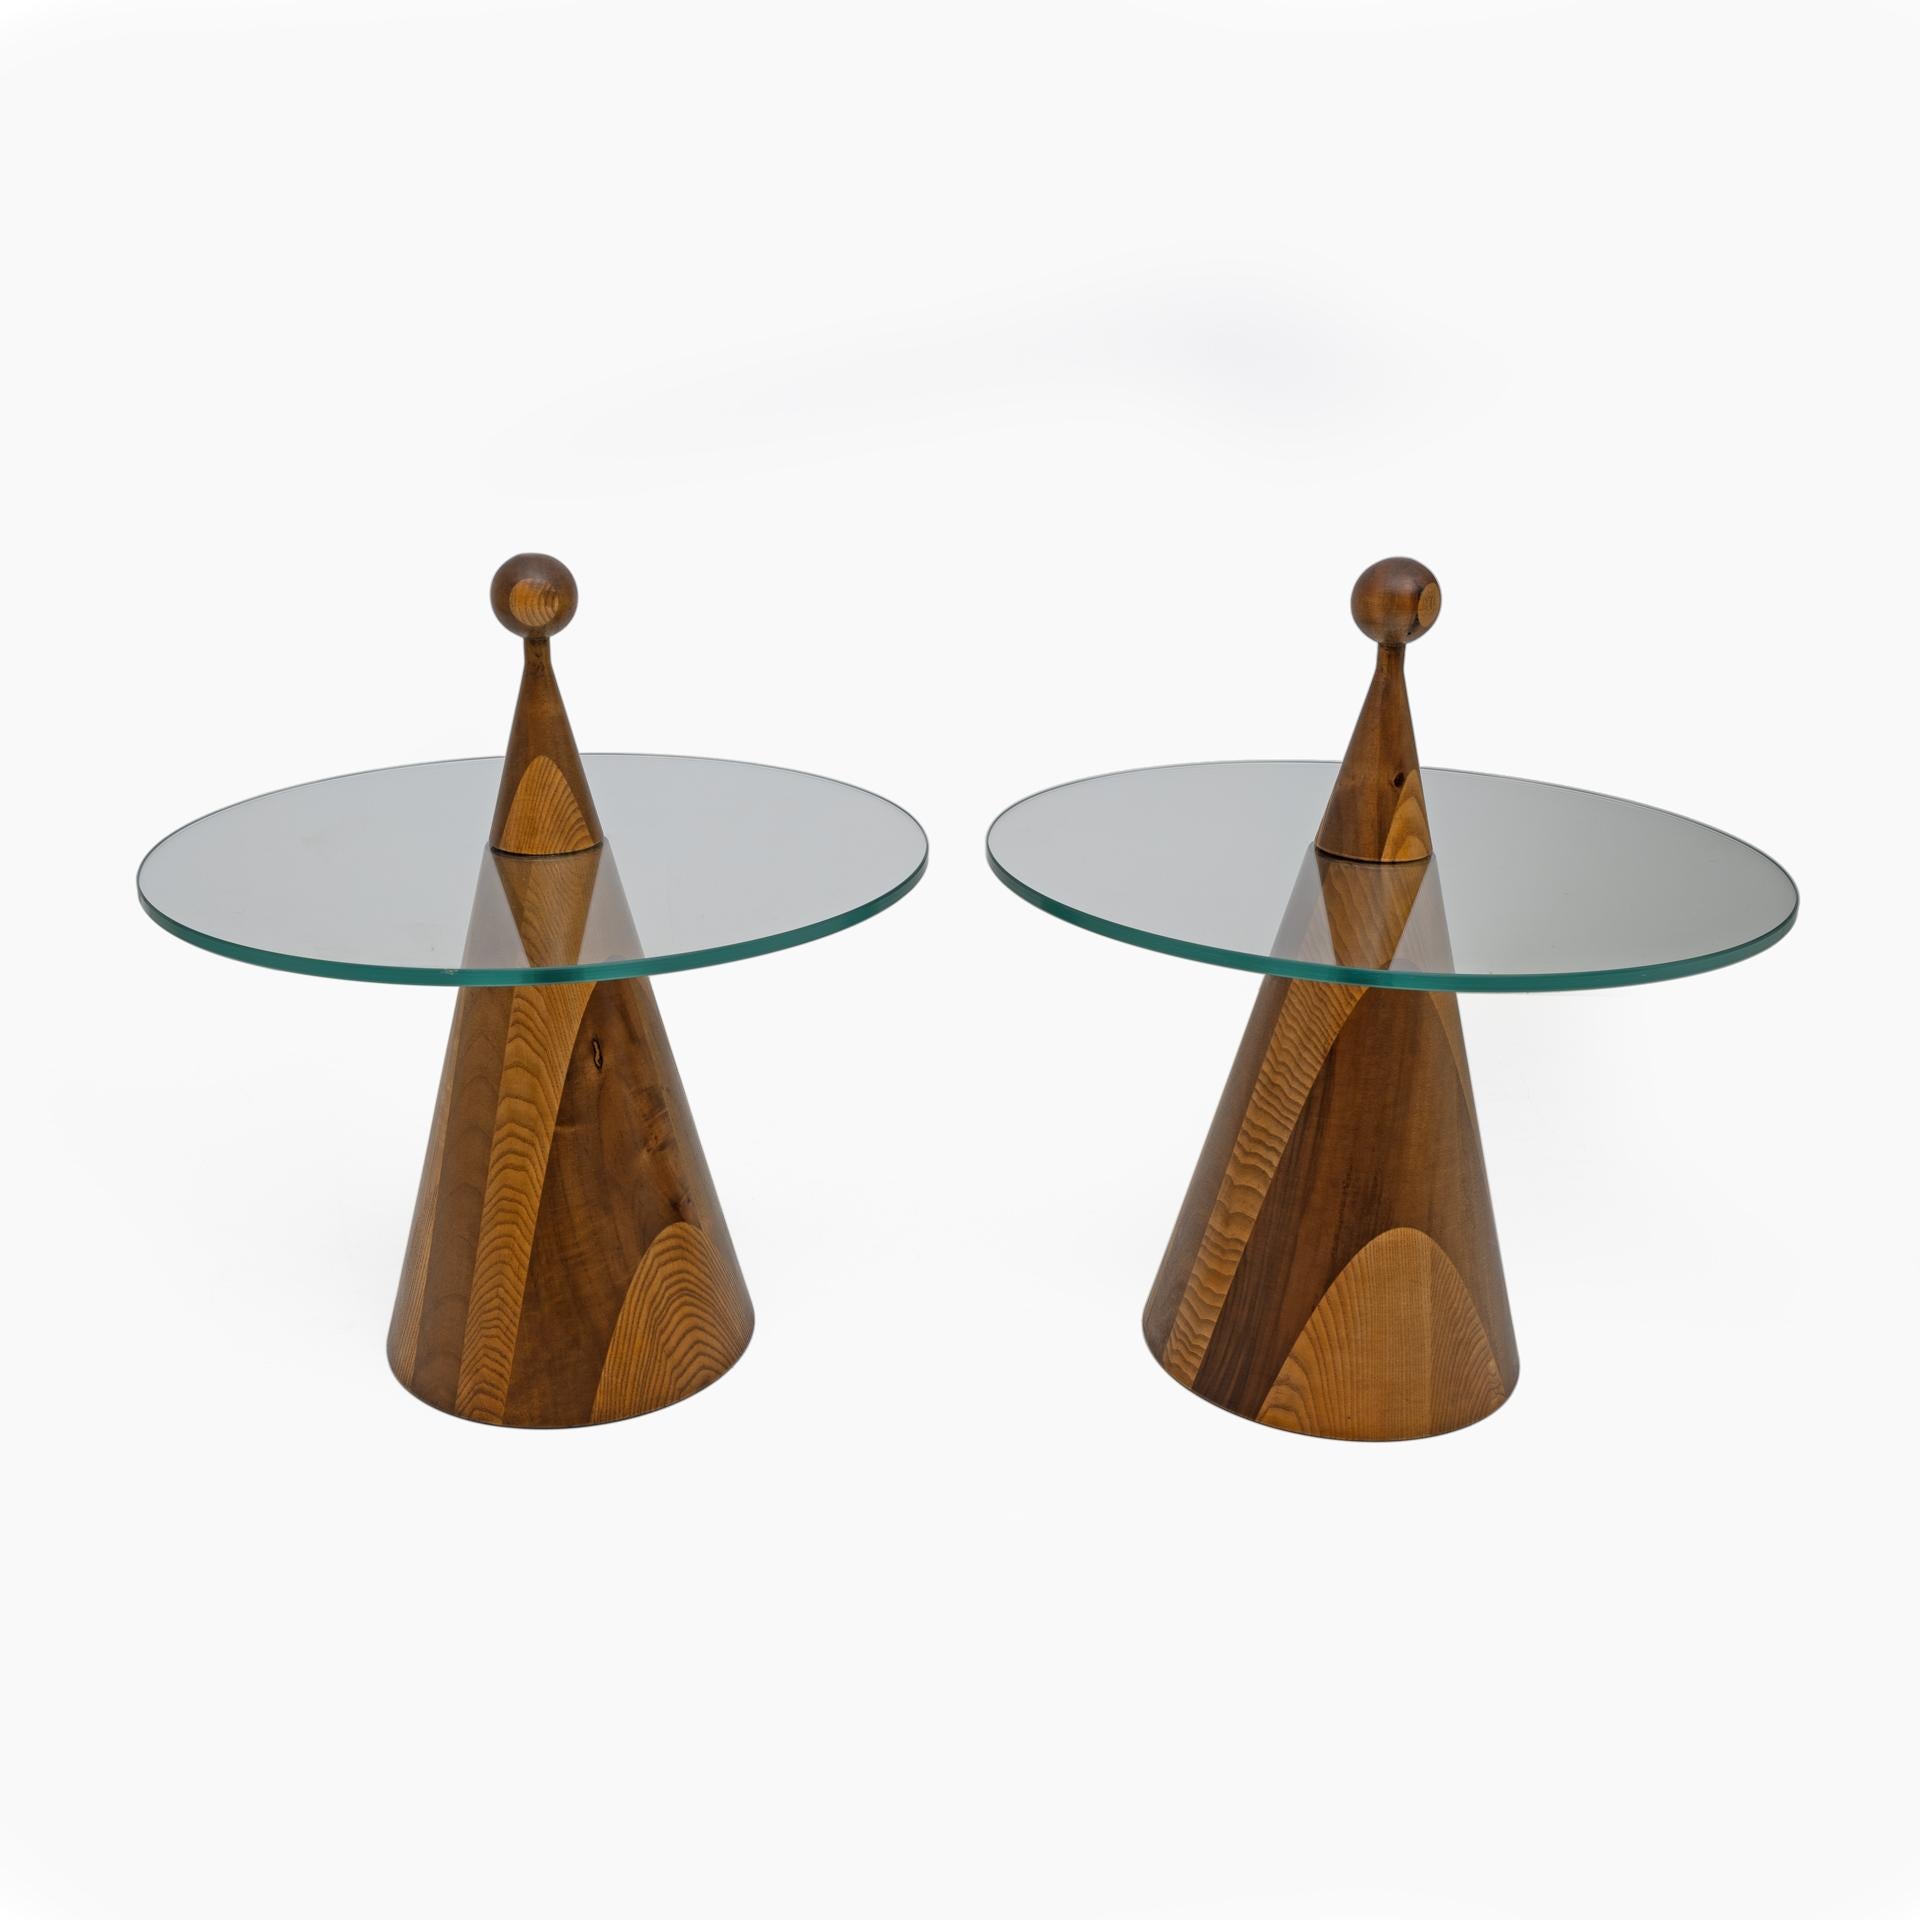 Schöne Ibisco Couchtische/Nachttische aus den 1970er Jahren, hergestellt aus Nussbaumholz und Glas. Diese Tische haben eine charakteristische Kegelform, mit einer runden Glasplatte von 50 cm Durchmesser, die von eleganten Beinen aus Walnussholz